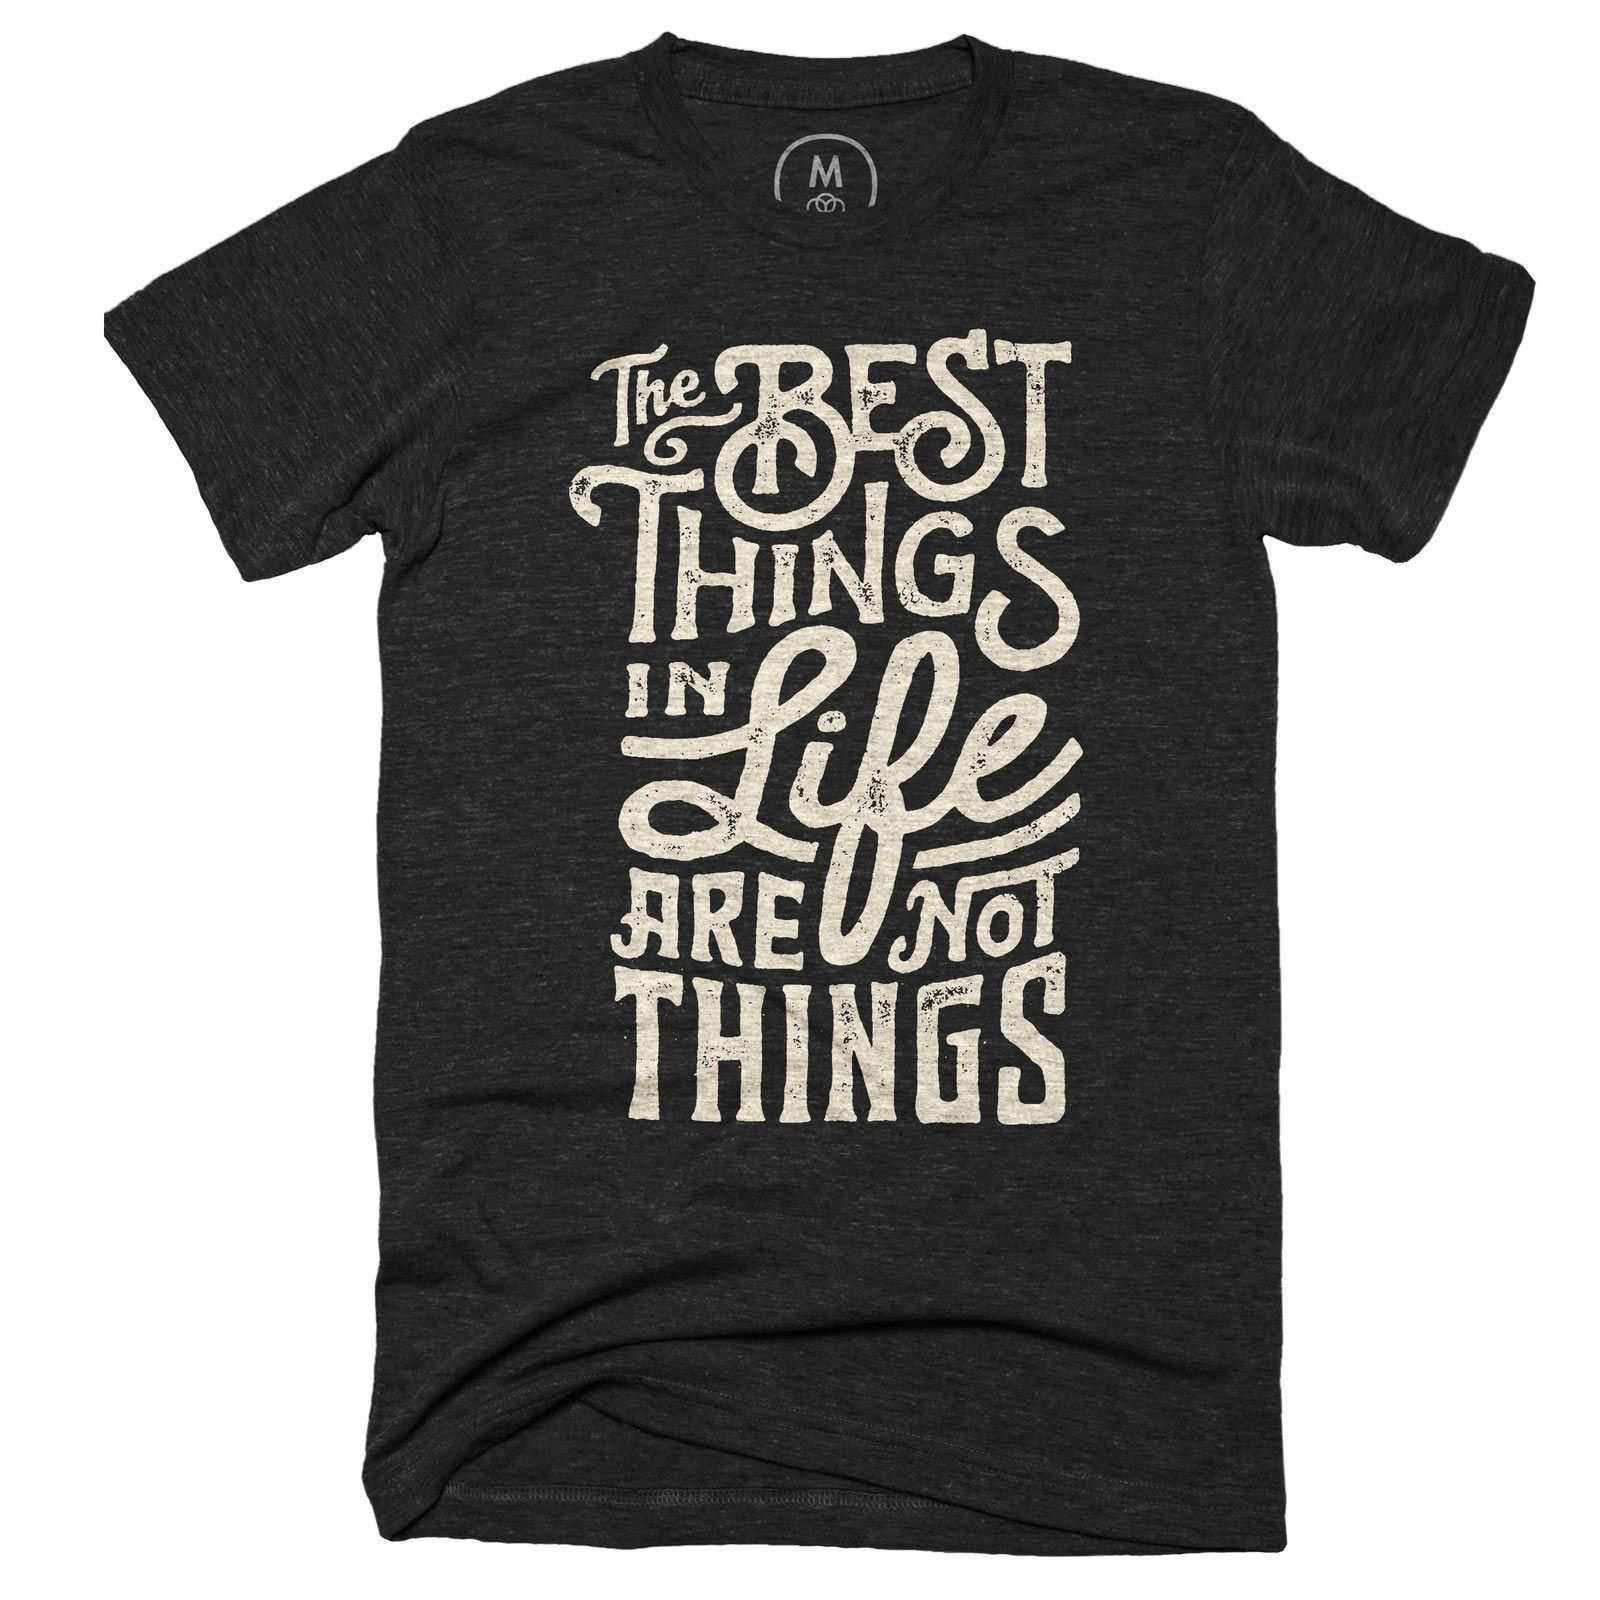 The Best Things Graphic Designer T Shirt By Wes Allen Cotton Bureau The Best Things In Life Ar Camisetas Estampadas Camisetas Personalizadas Camisetas